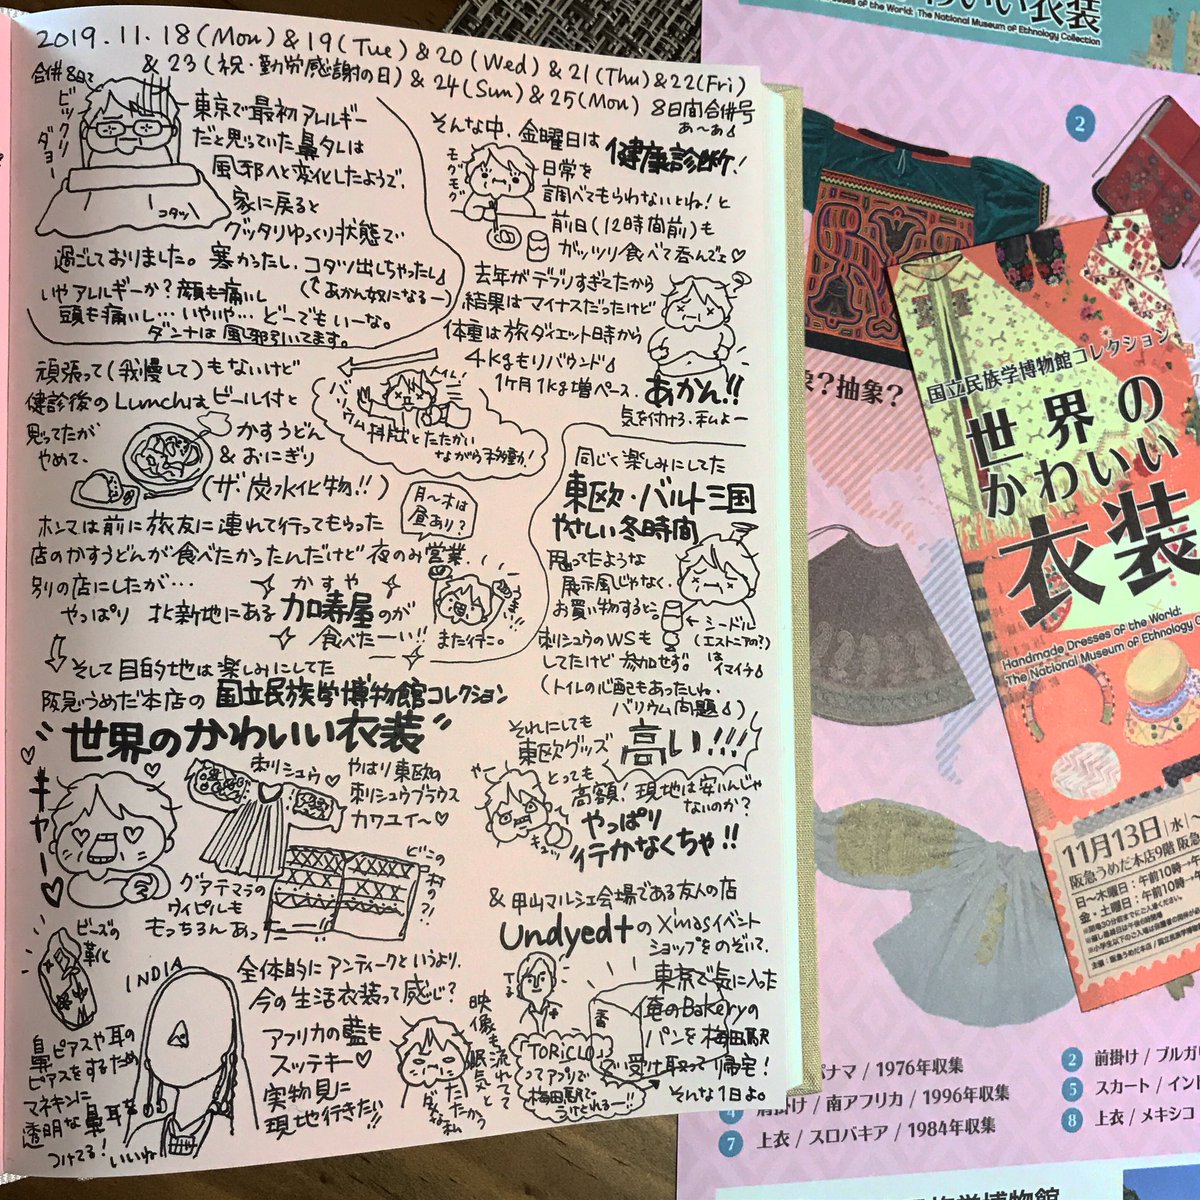 千葉薫 旅絵日記冊子好評販売中 On Twitter やっぱり民族衣装